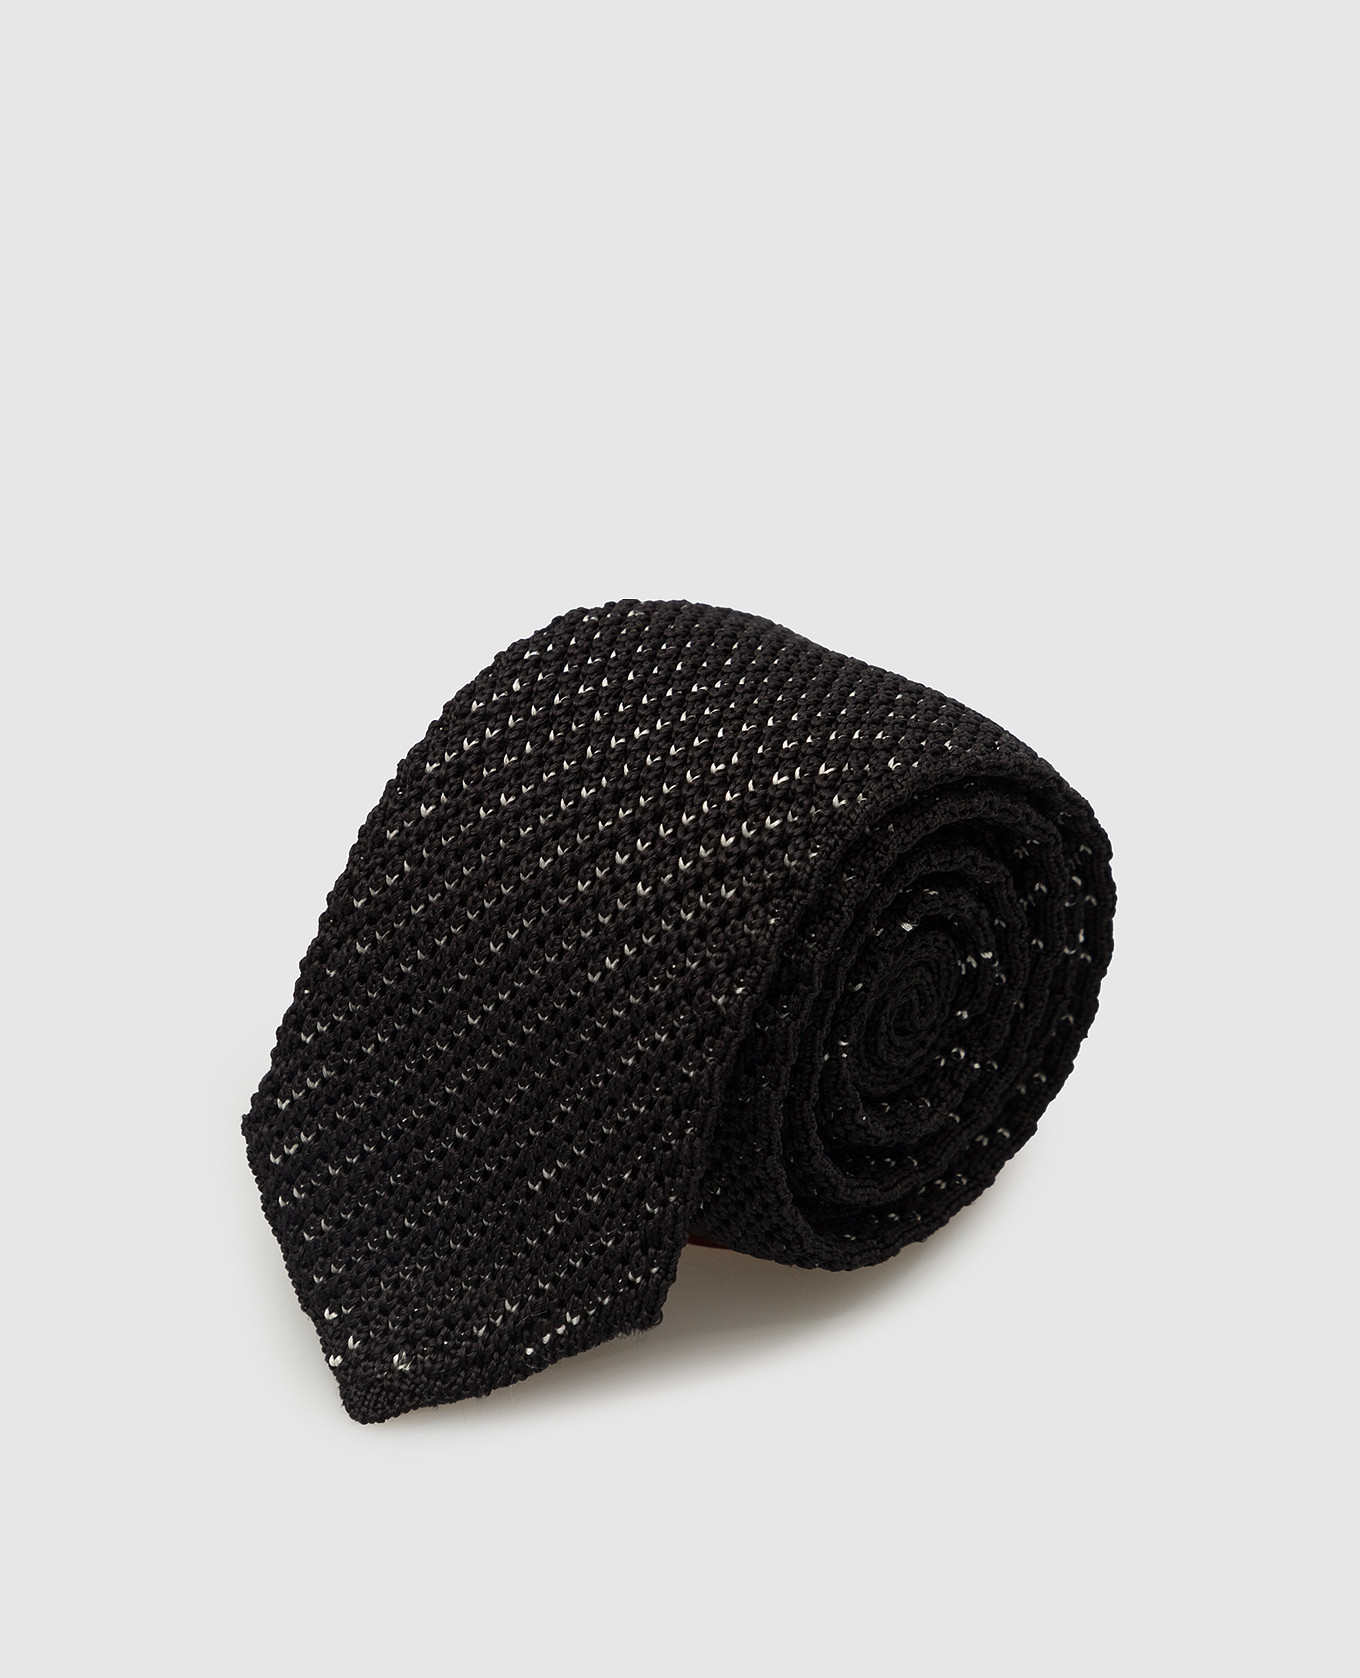 Children's black silk tie in a pattern